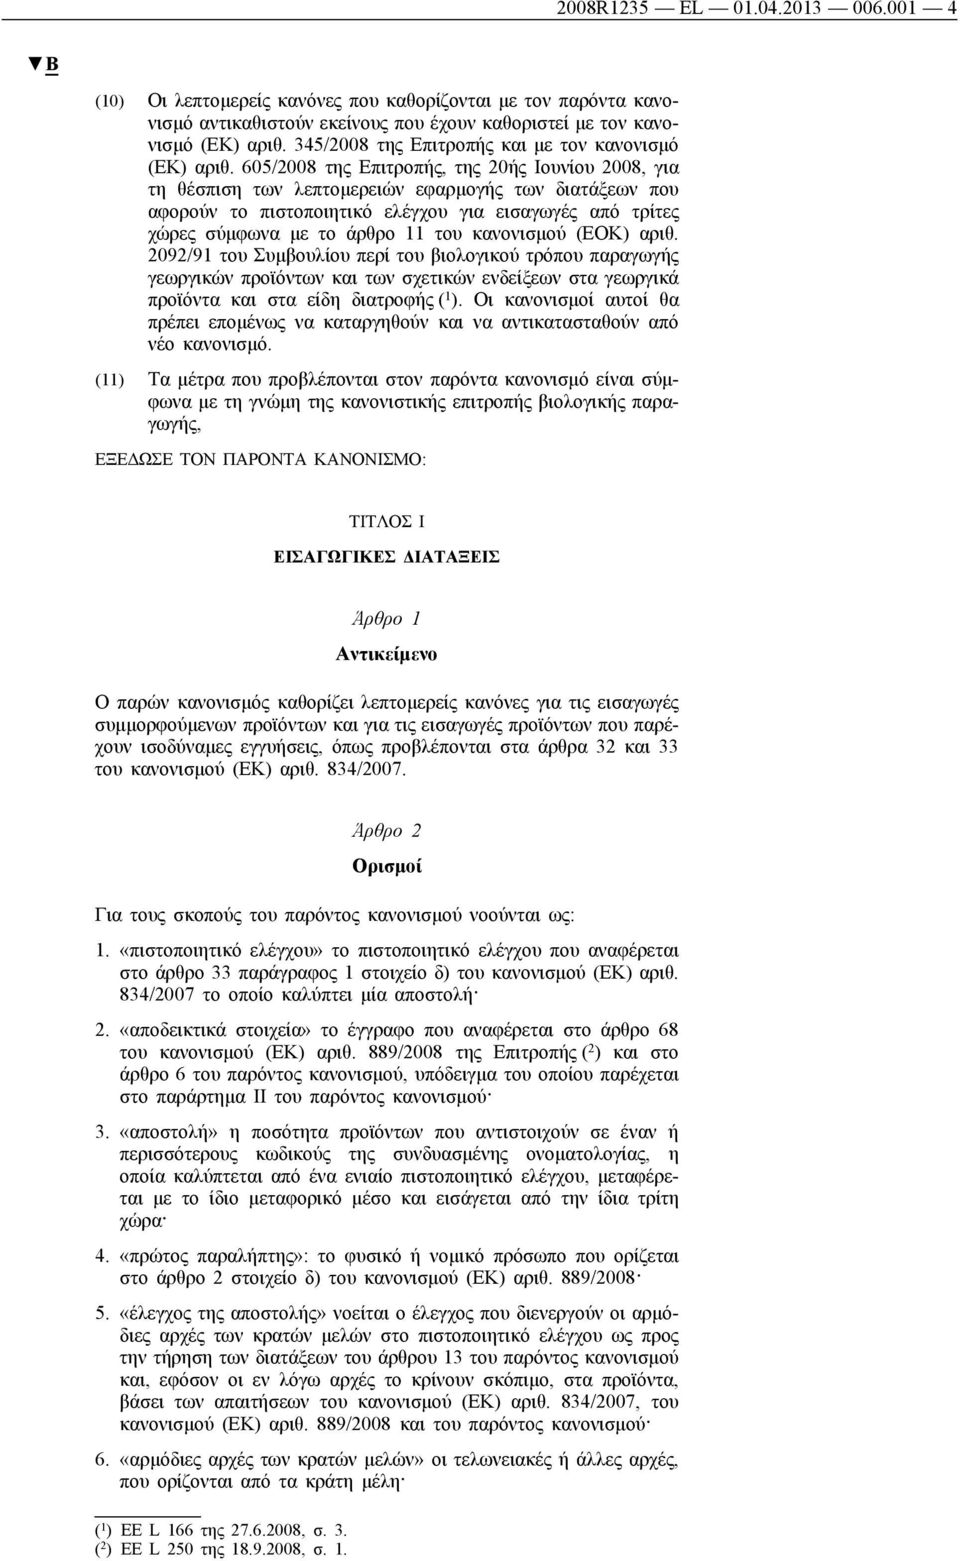 605/2008 της Επιτροπής, της 20ής Ιουνίου 2008, για τη θέσπιση των λεπτομερειών εφαρμογής των διατάξεων που αφορούν το πιστοποιητικό ελέγχου για εισαγωγές από τρίτες χώρες σύμφωνα με το άρθρο 11 του